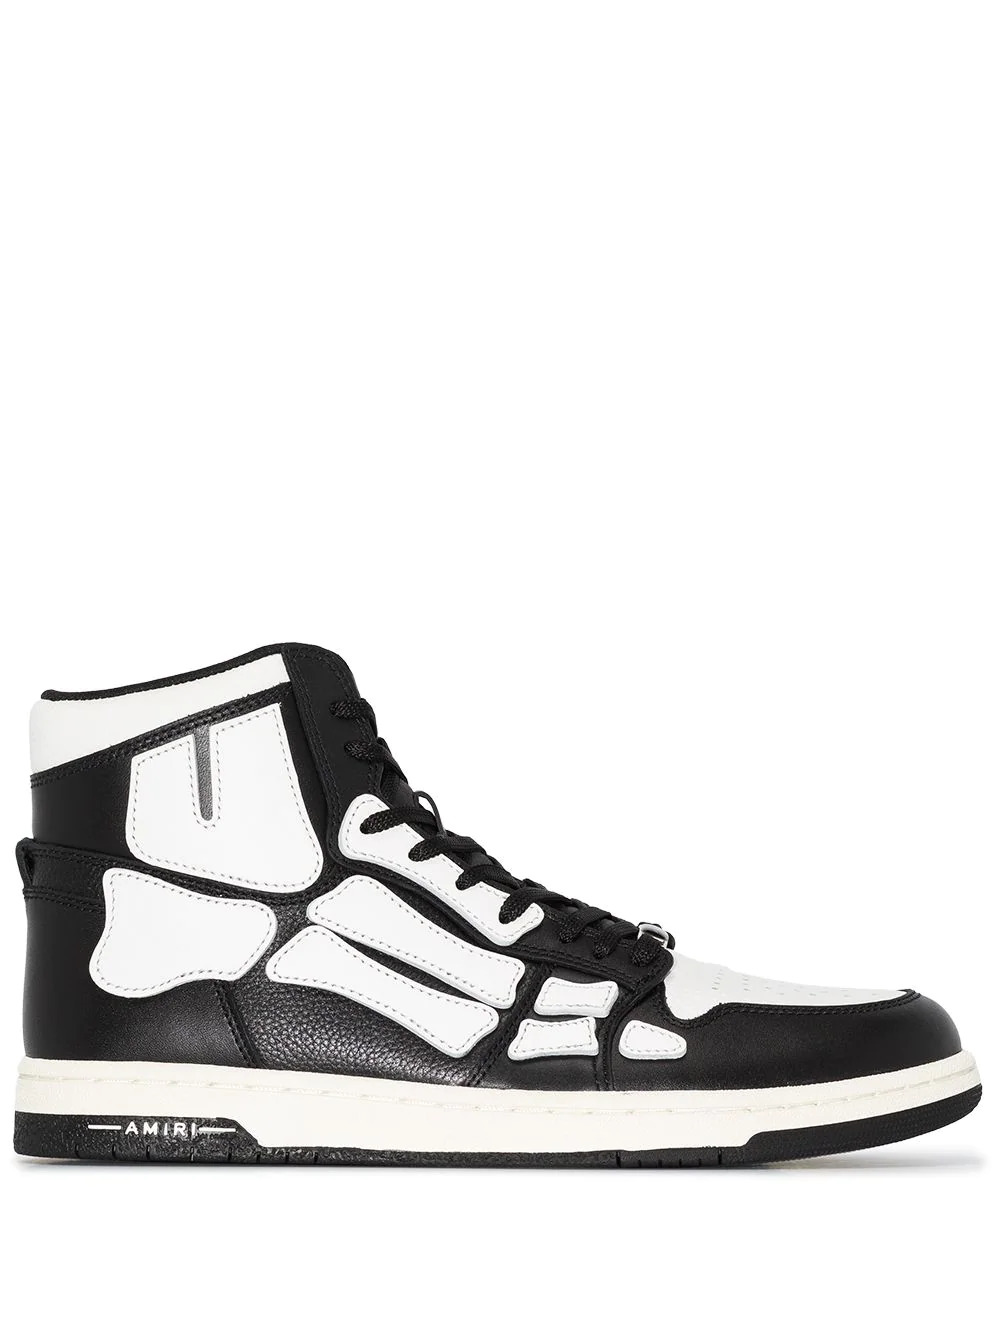 Skel High-Top Sneaker in Schwarz/Weiß